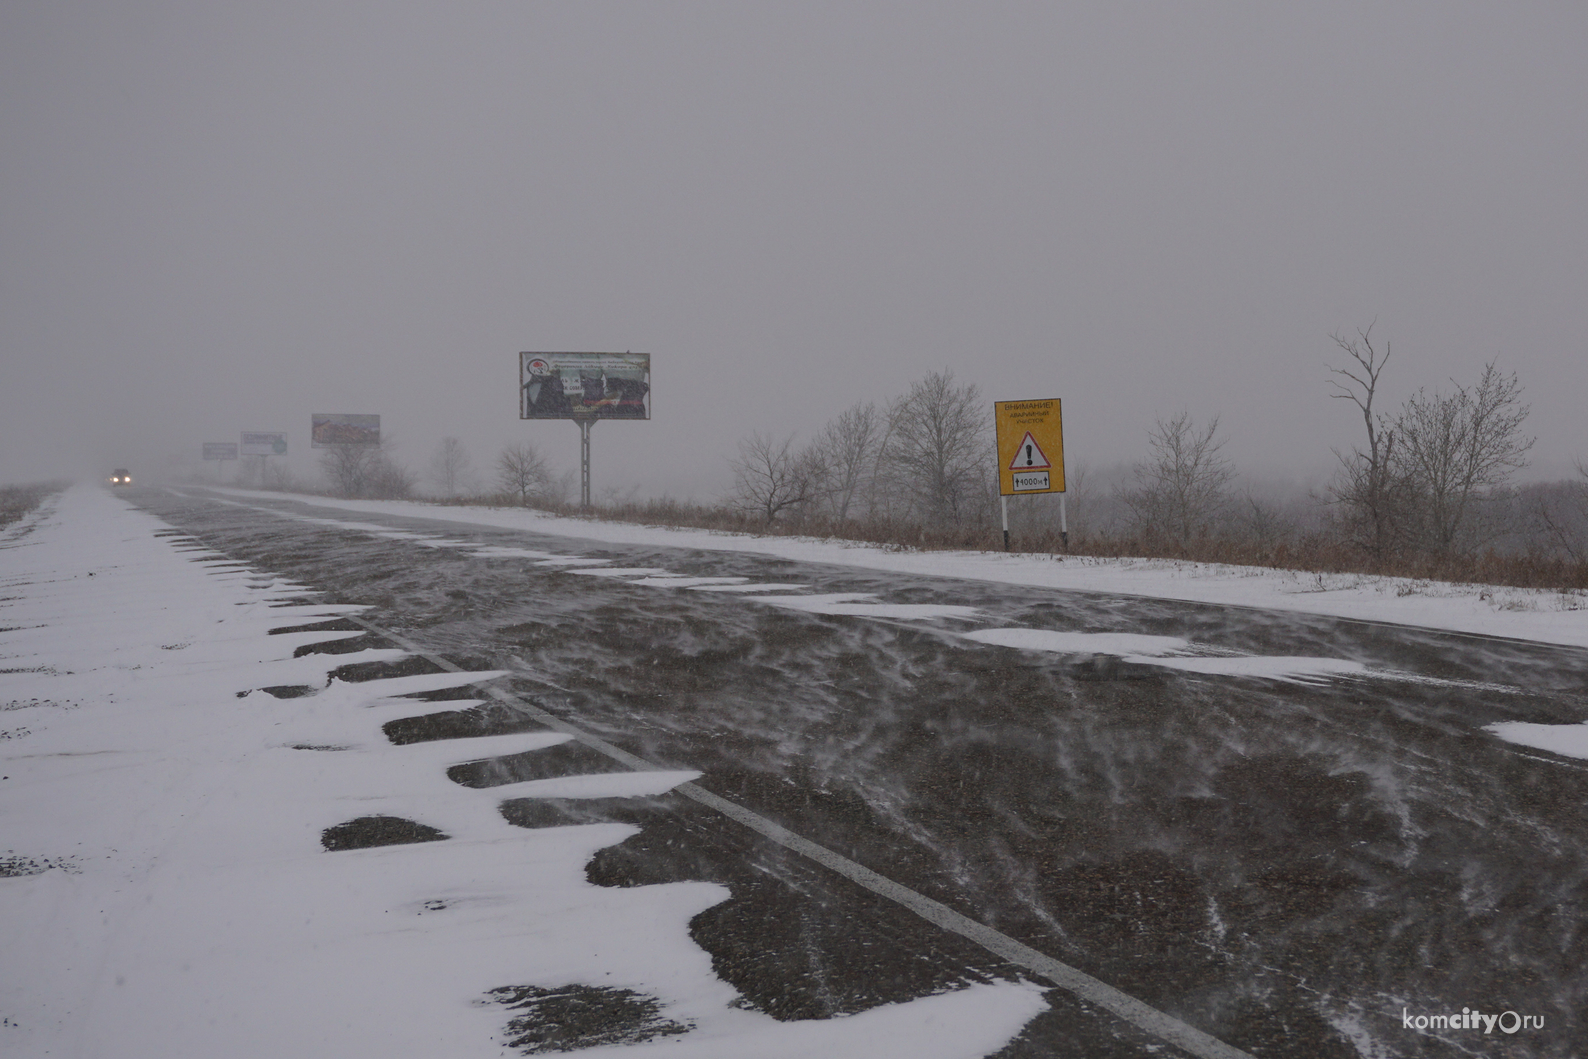 Трассу Комсомольск-на-Амуре — Хабаровск закрыли для автобусов из-за неблагоприятных погодных условий